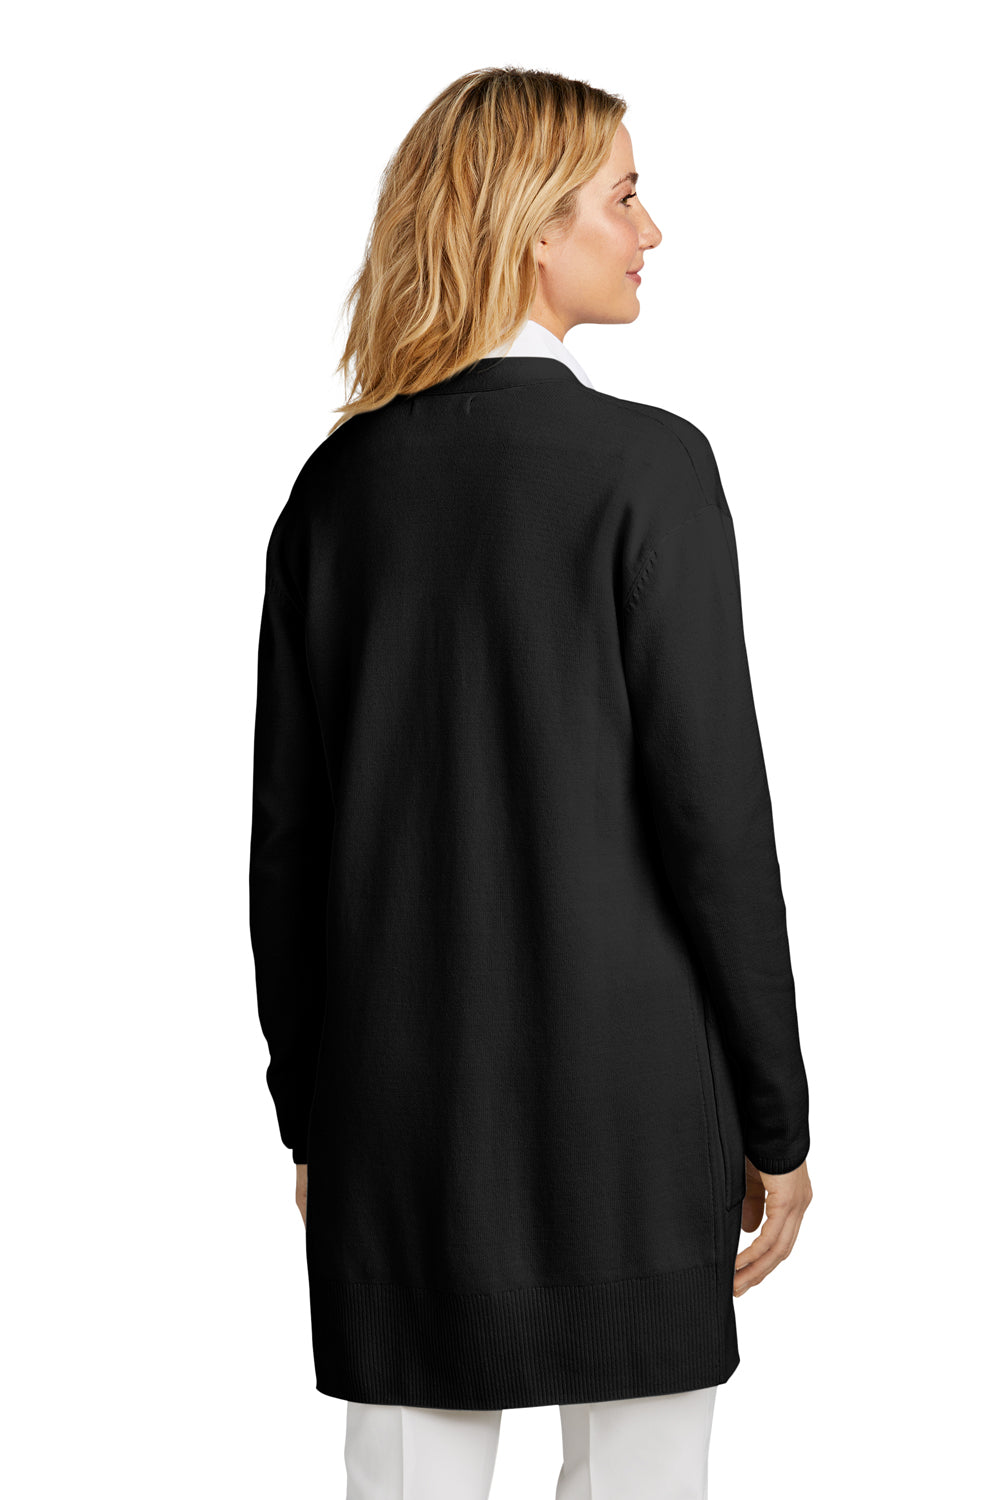 Mercer+Mettle MM3023 Womens Open Front Cardigan Sweater Deep Black Back